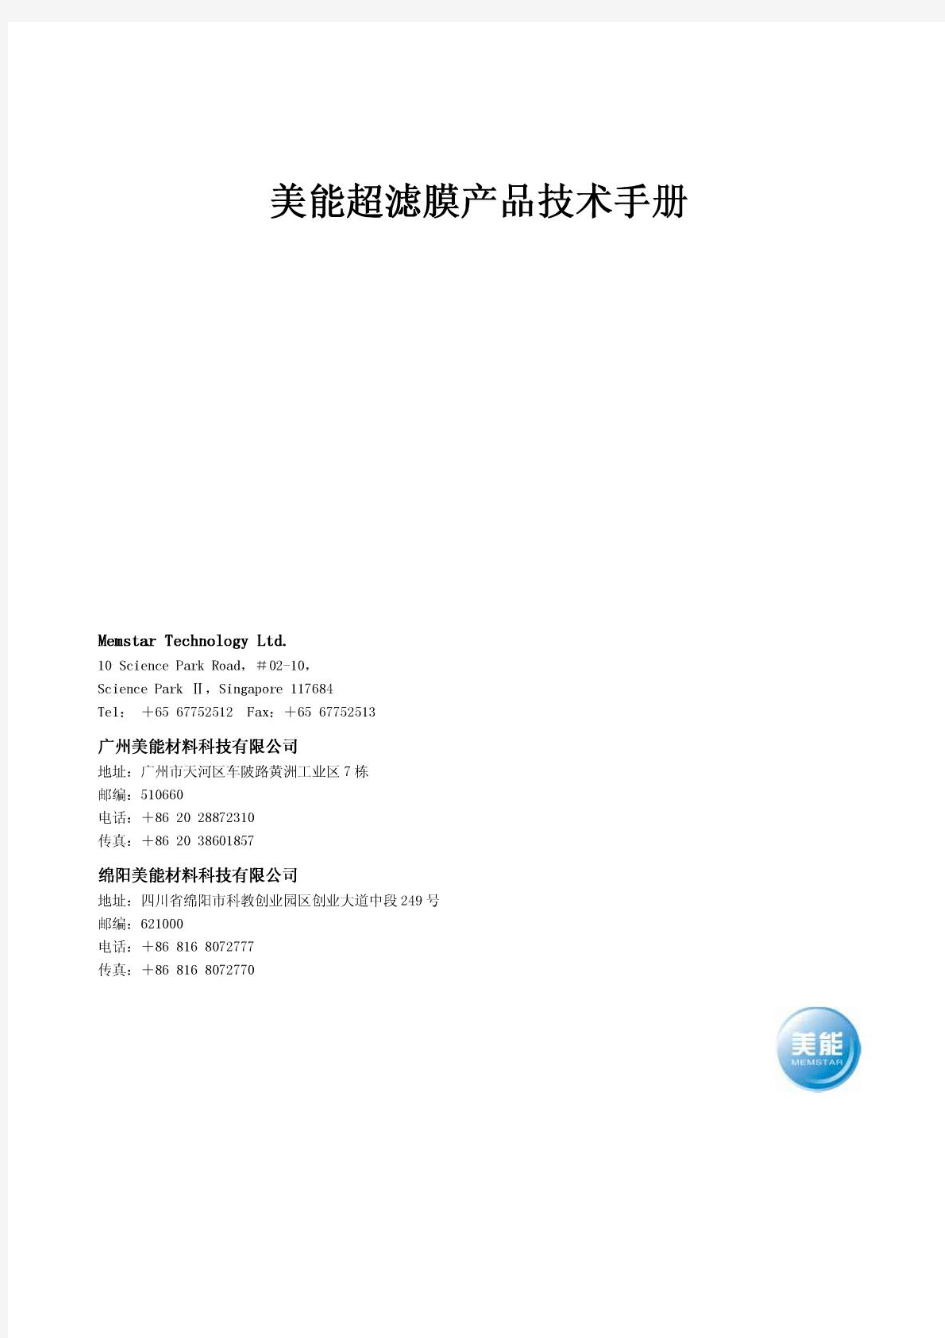 美能超滤膜产品技术手册美能超滤膜产品技术手册